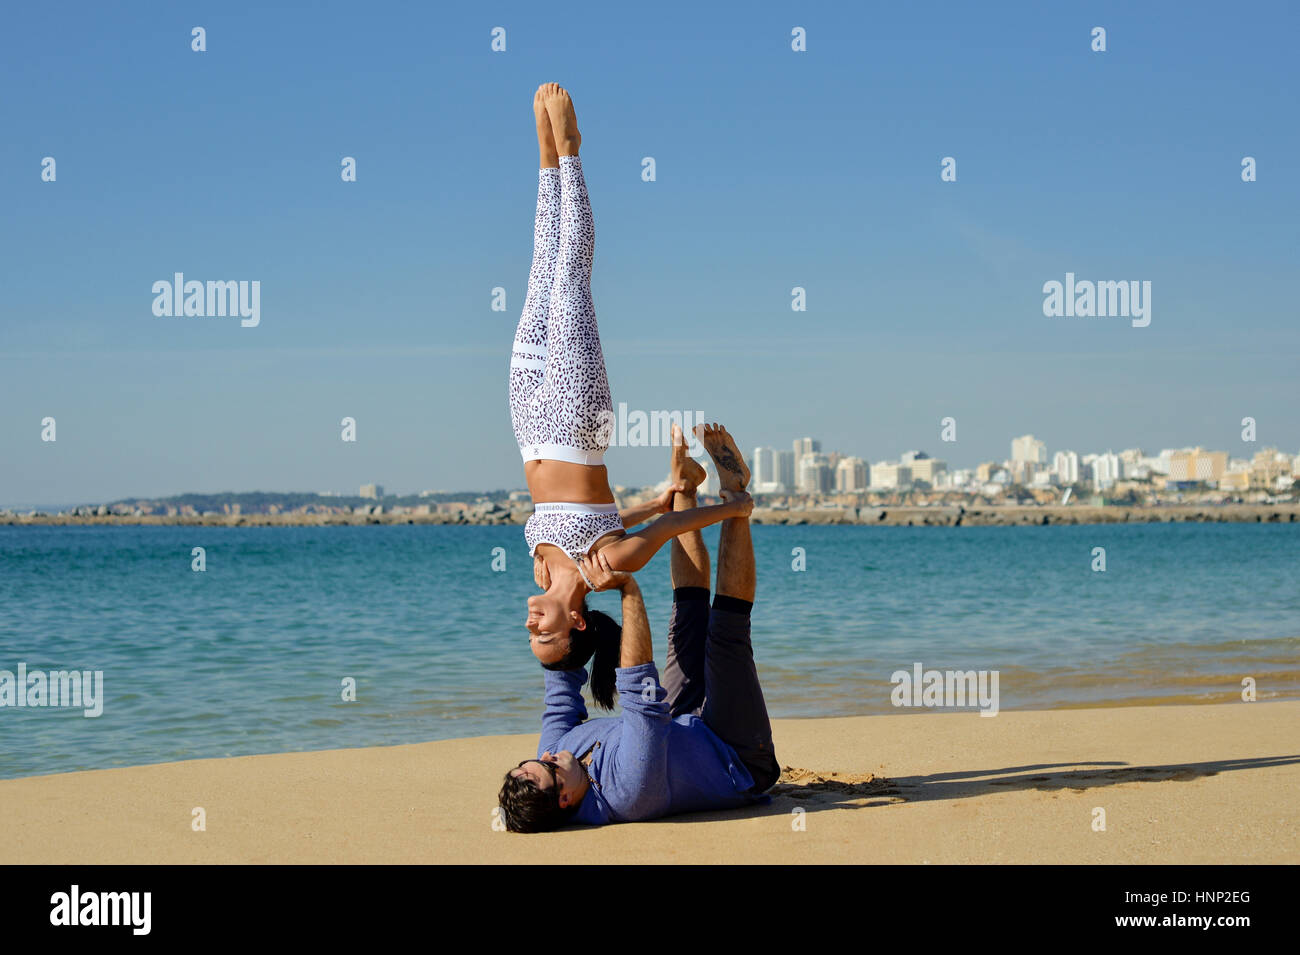 couple doing acro yoga Stock Photo